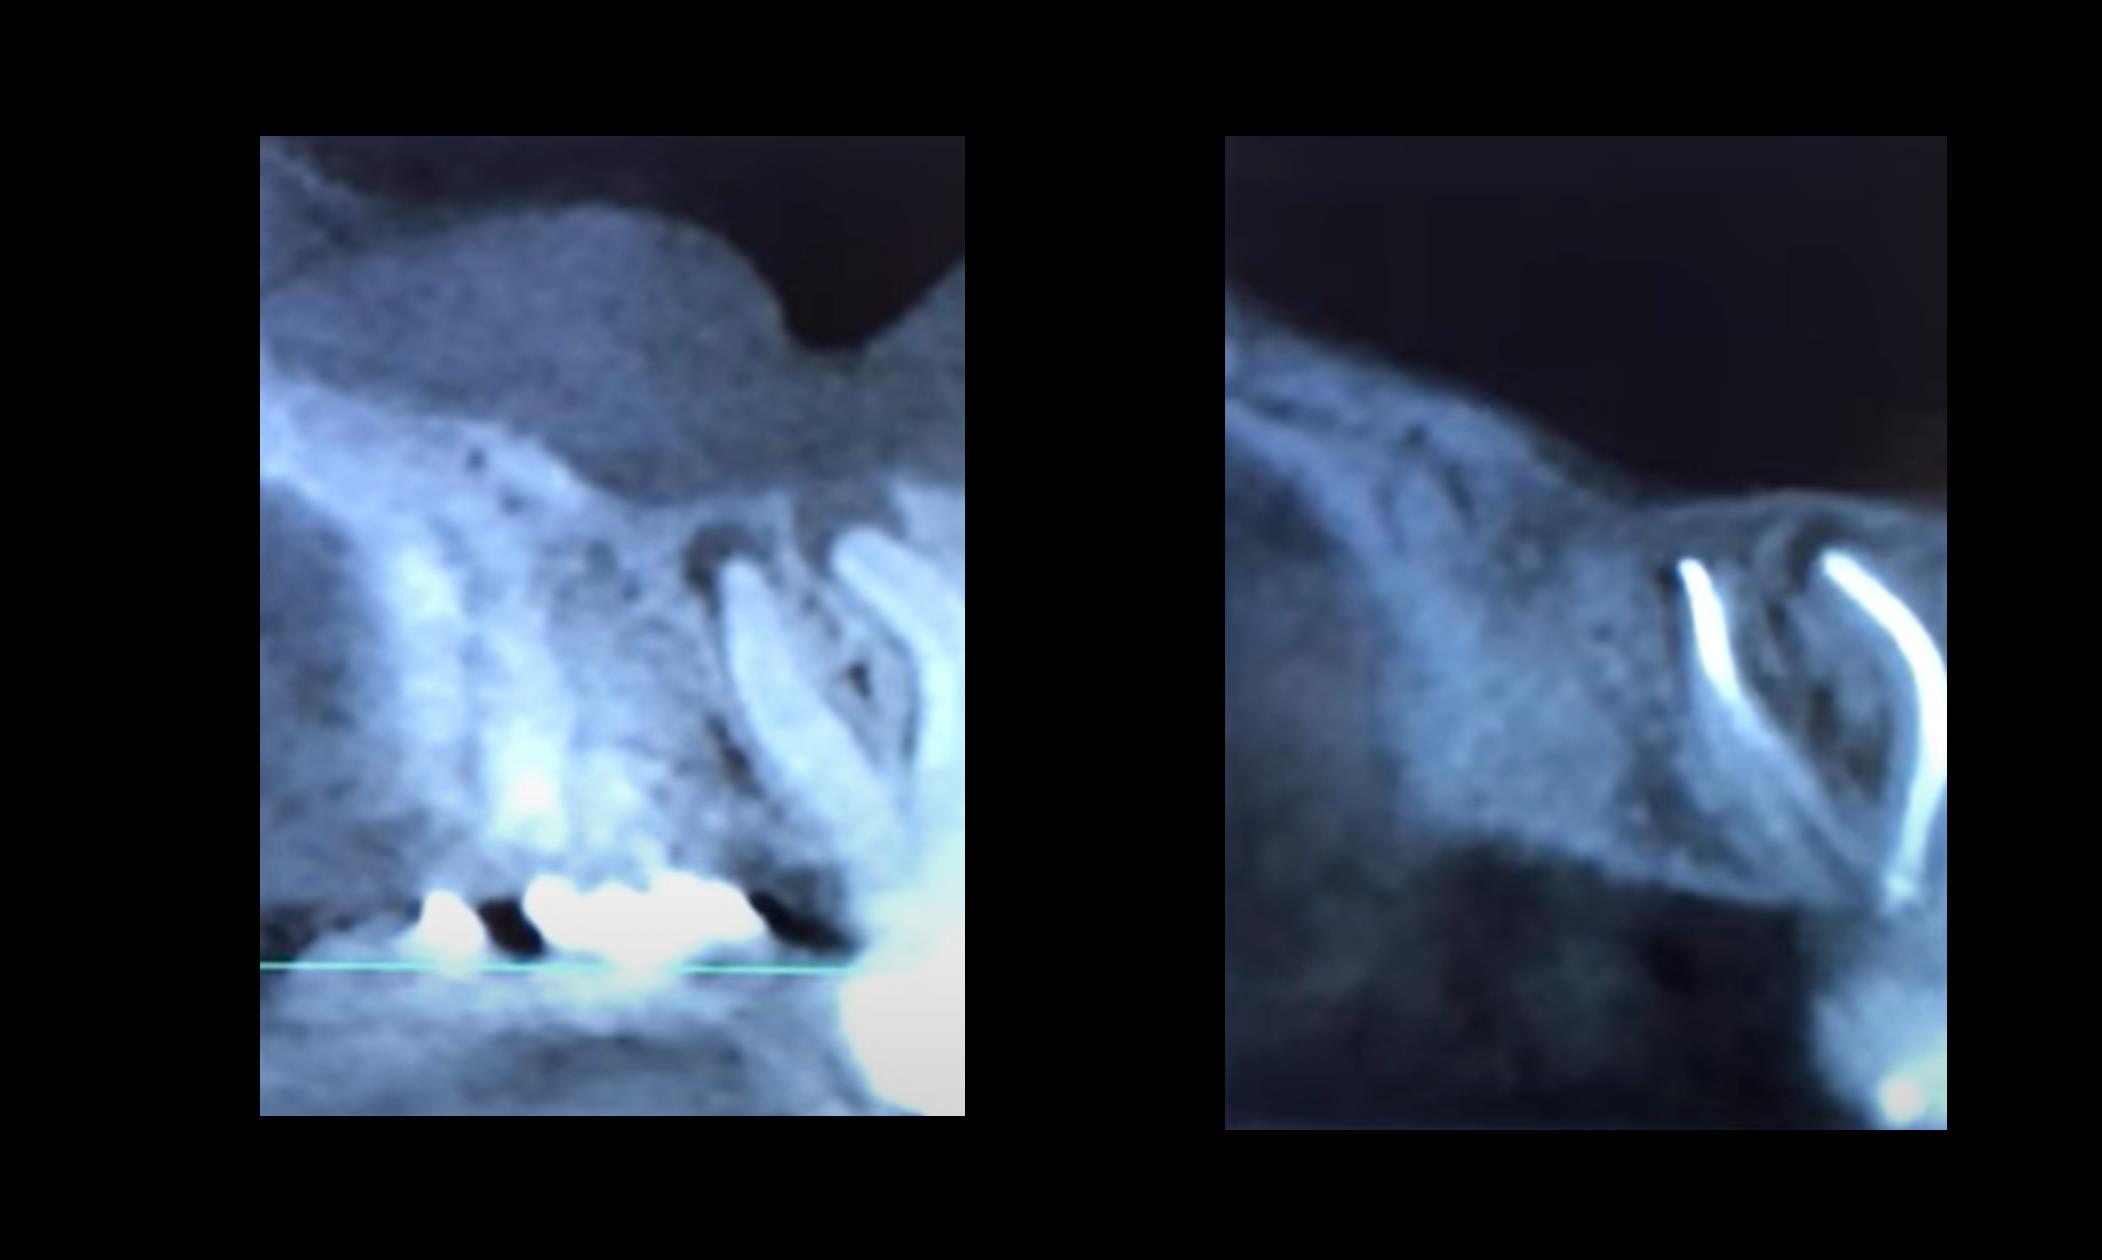 Состояние верхнечелюстной пазухи: слева - при поступлении; справа – через 10 месяцев после стоматологического лечения